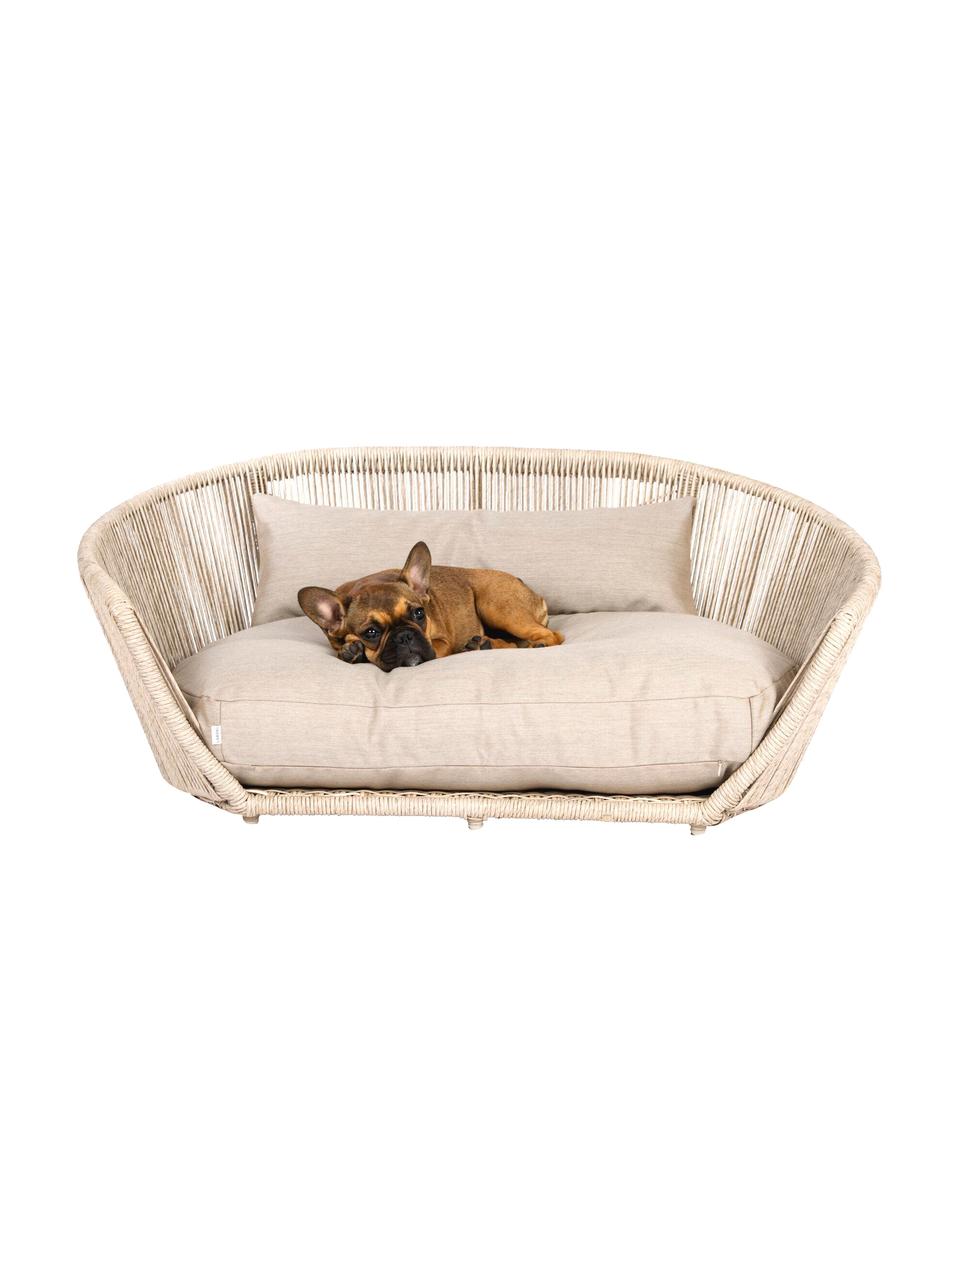 Interiérový/exteriérový pelíšek pro psy Vogue, Světle béžová, béžová, Š 110 cm, H 74 cm